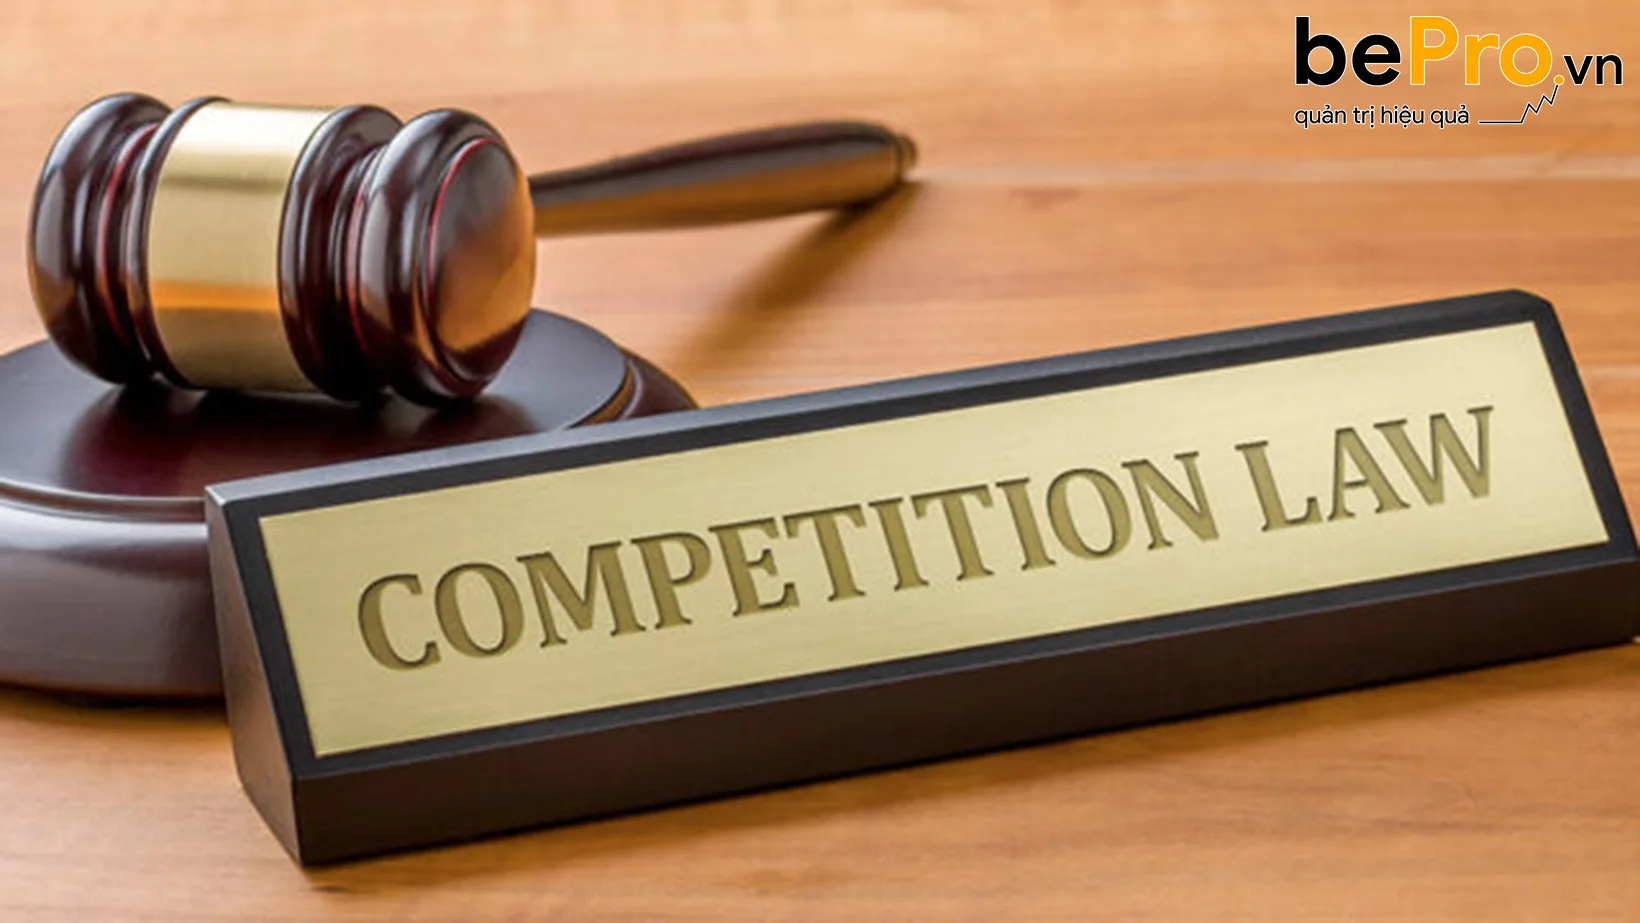 Luật cạnh tranh và phạm vi áp dụng theo quy định mới nhất